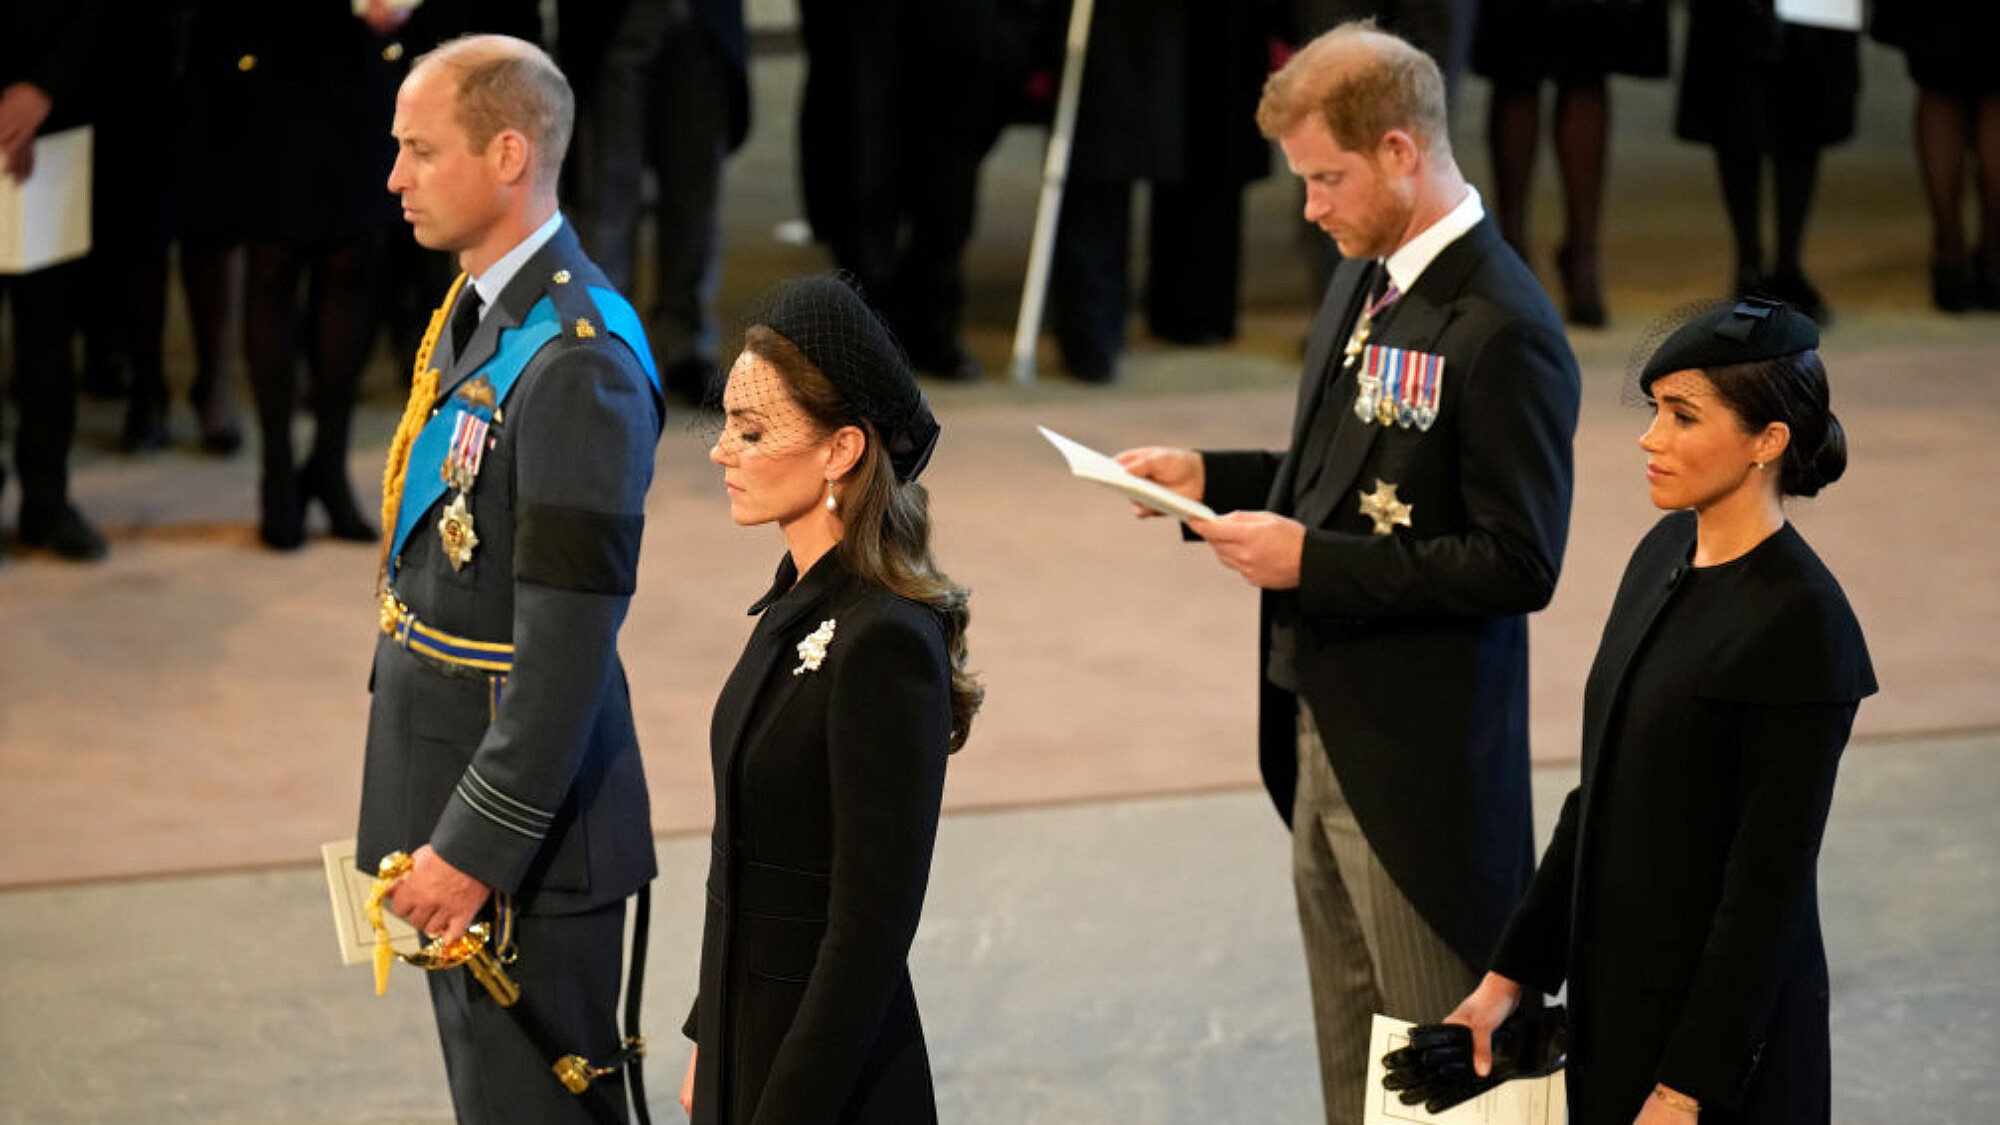 הנסיכים וויליאם והארי, קייט מידלטון ומייגן מרקל, במהלך טקס נשיאת הארון של המלכה אליזבת מבקינגהאם לווסטמינסטר | צילום: Christopher Furlong/Getty Images